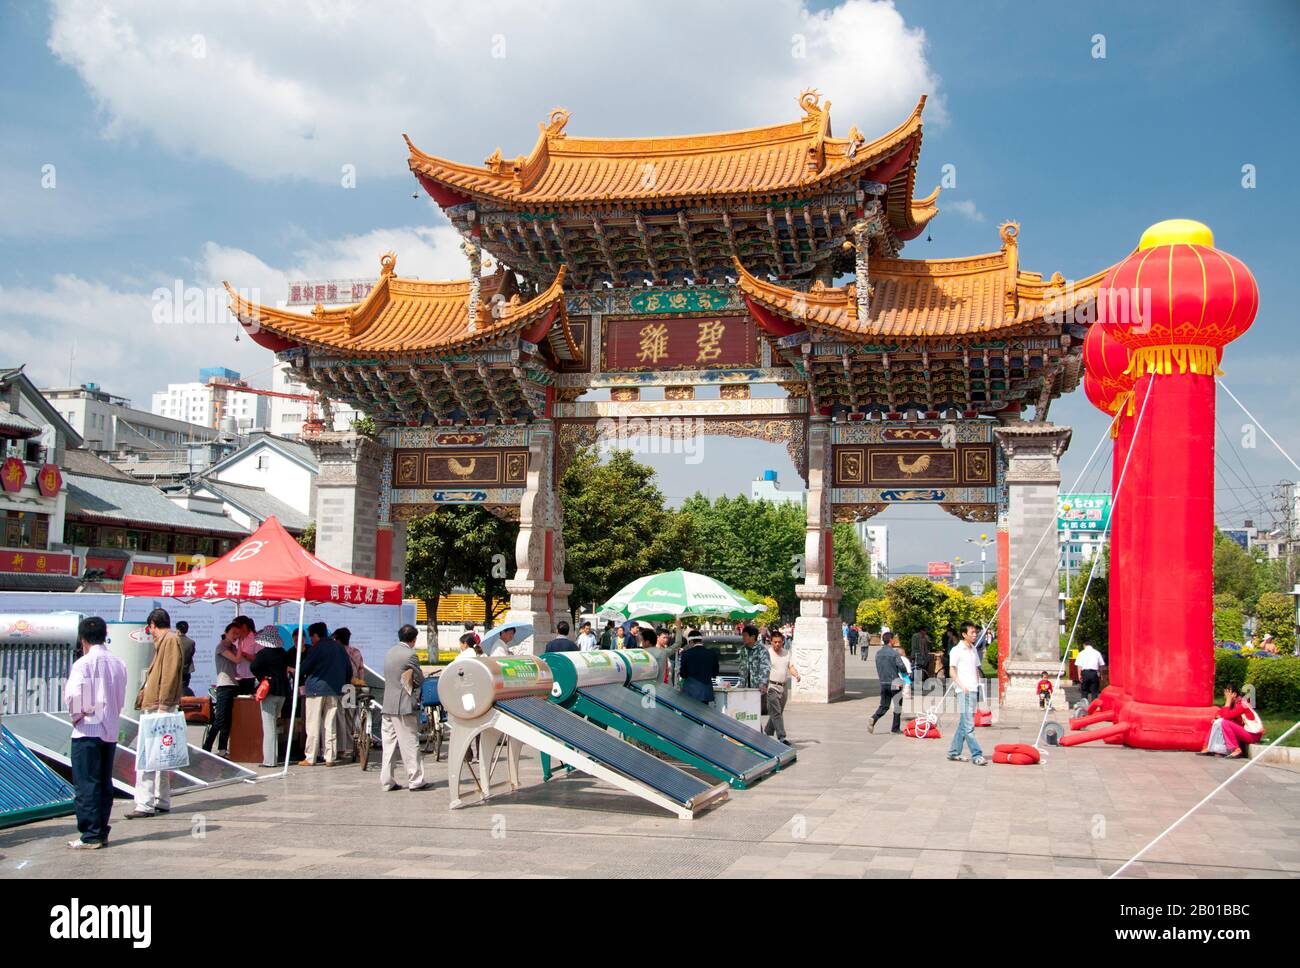 Chine: Vente de panneaux solaires à Jinma Biji Square, centre de Kunming, province du Yunnan. Les arcades Jinma Biji ou Golden Horse Jade Rooster se tiennent au cœur du Kunming commercial. Le cheval doré et le poulet vert (coq) sont des symboles de la ville de Kunming et apparaissent dans son emblème. Construit sur les rives du lac de Dian et entouré de montagnes calcaires, Kunming était une importante ancienne route commerciale entre le Tibet, la Chine et l'Asie du Sud-est. La ville, alors appelée Yunnanfu, a souffert aux mains du chef rebelle du Wenxiu, le sultan de Dali, qui a attaqué et assiégé la ville plusieurs fois. Banque D'Images